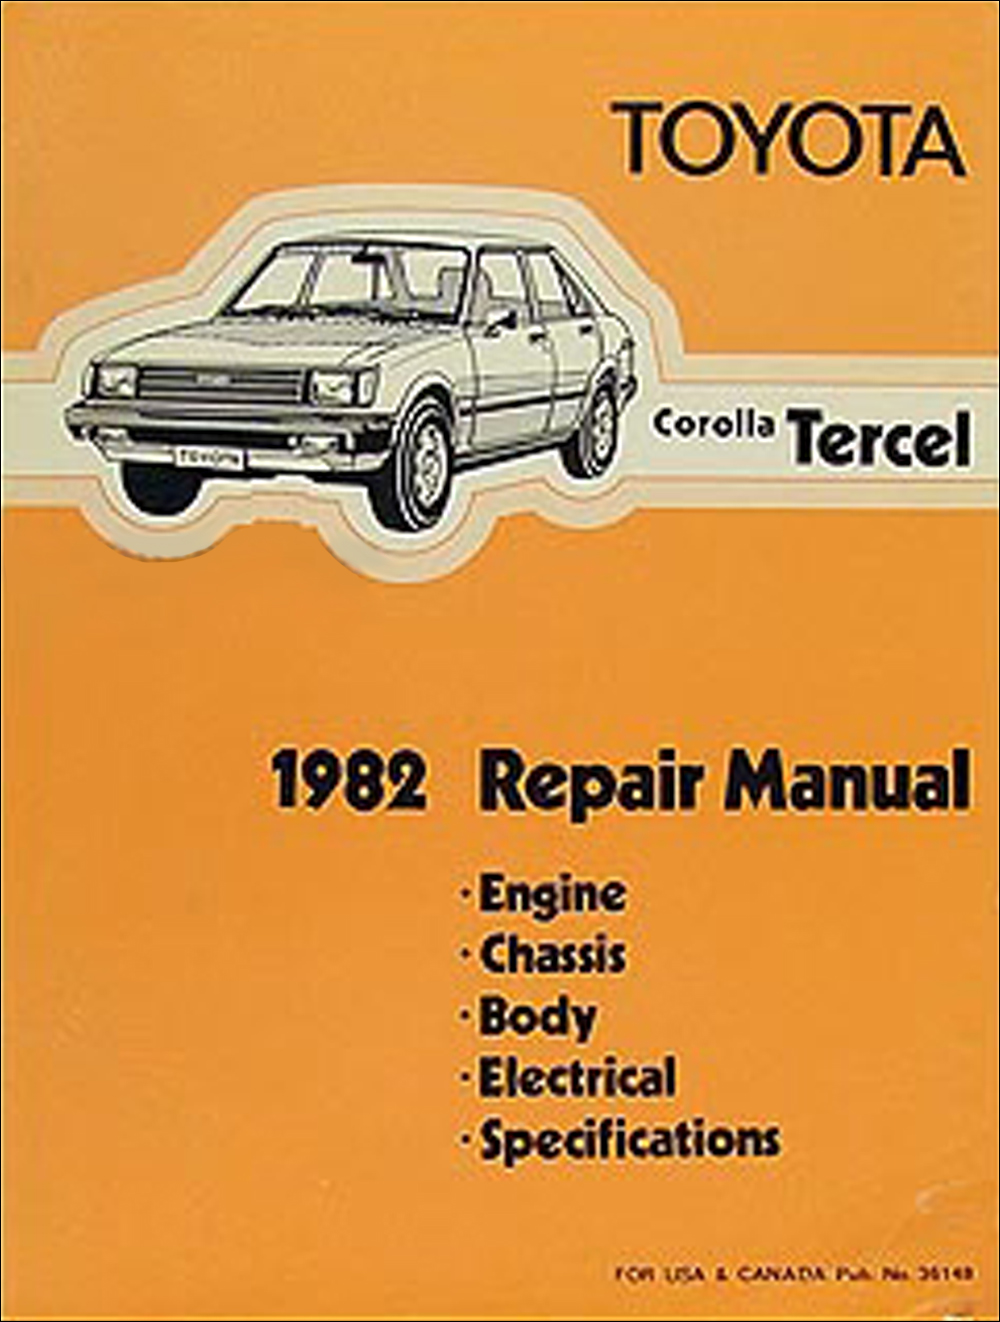 1982 Toyota Corolla Tercel Shop Manual Original No. 36148 (3A-C)